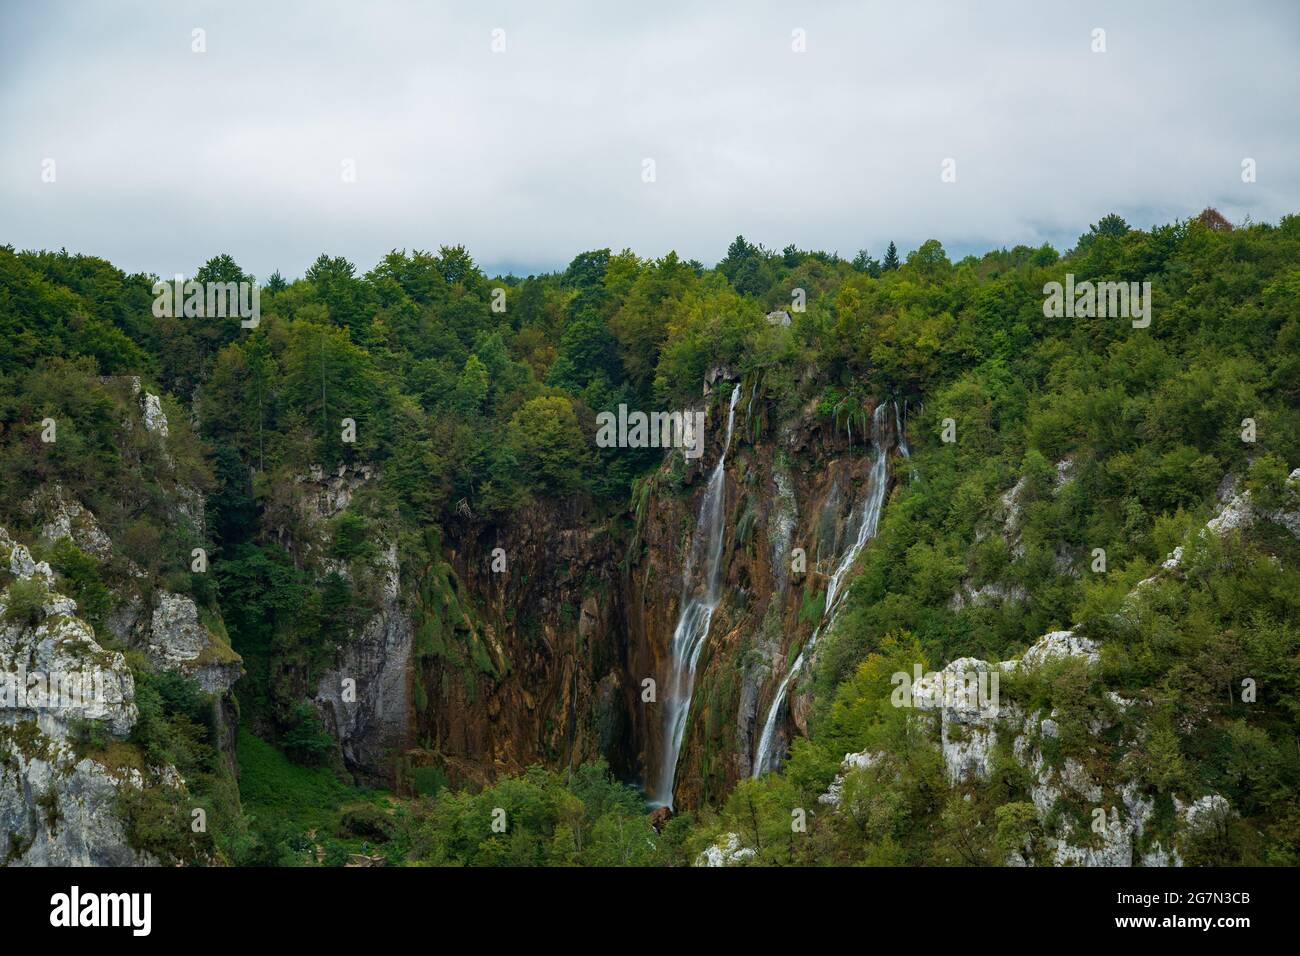 Parque natural de Plivitche en Croacia, caídas de agua, grandes lagos, bosques mediterráneos y lugares de ensueño Stock Photo